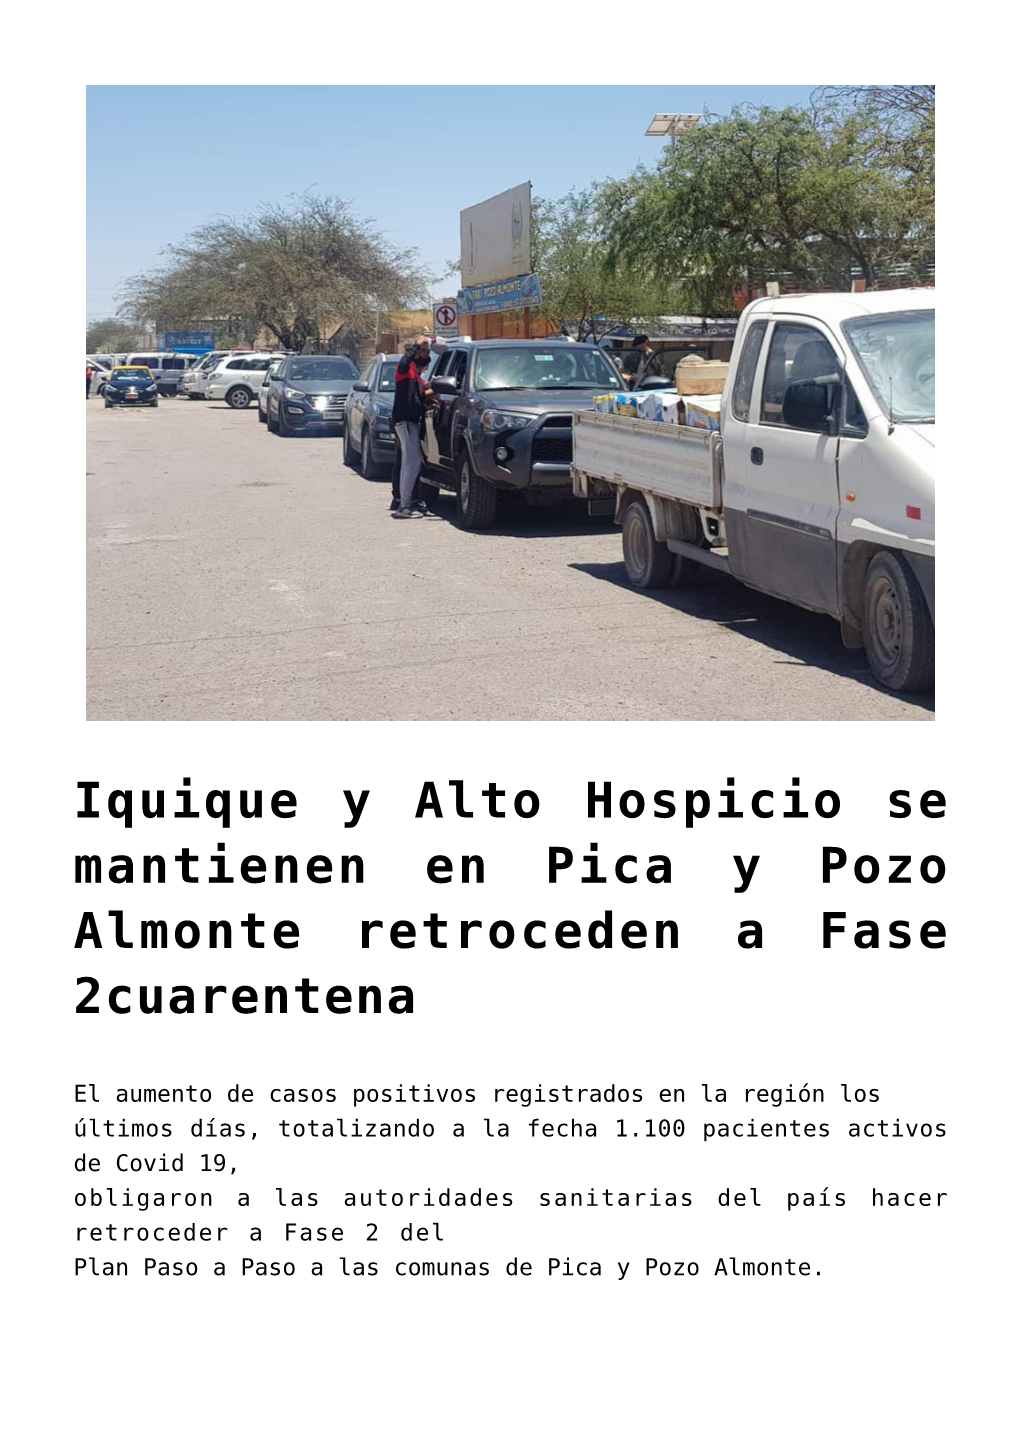 Iquique Y Alto Hospicio Se Mantienen En Pica Y Pozo Almonte Retroceden a Fase 2Cuarentena